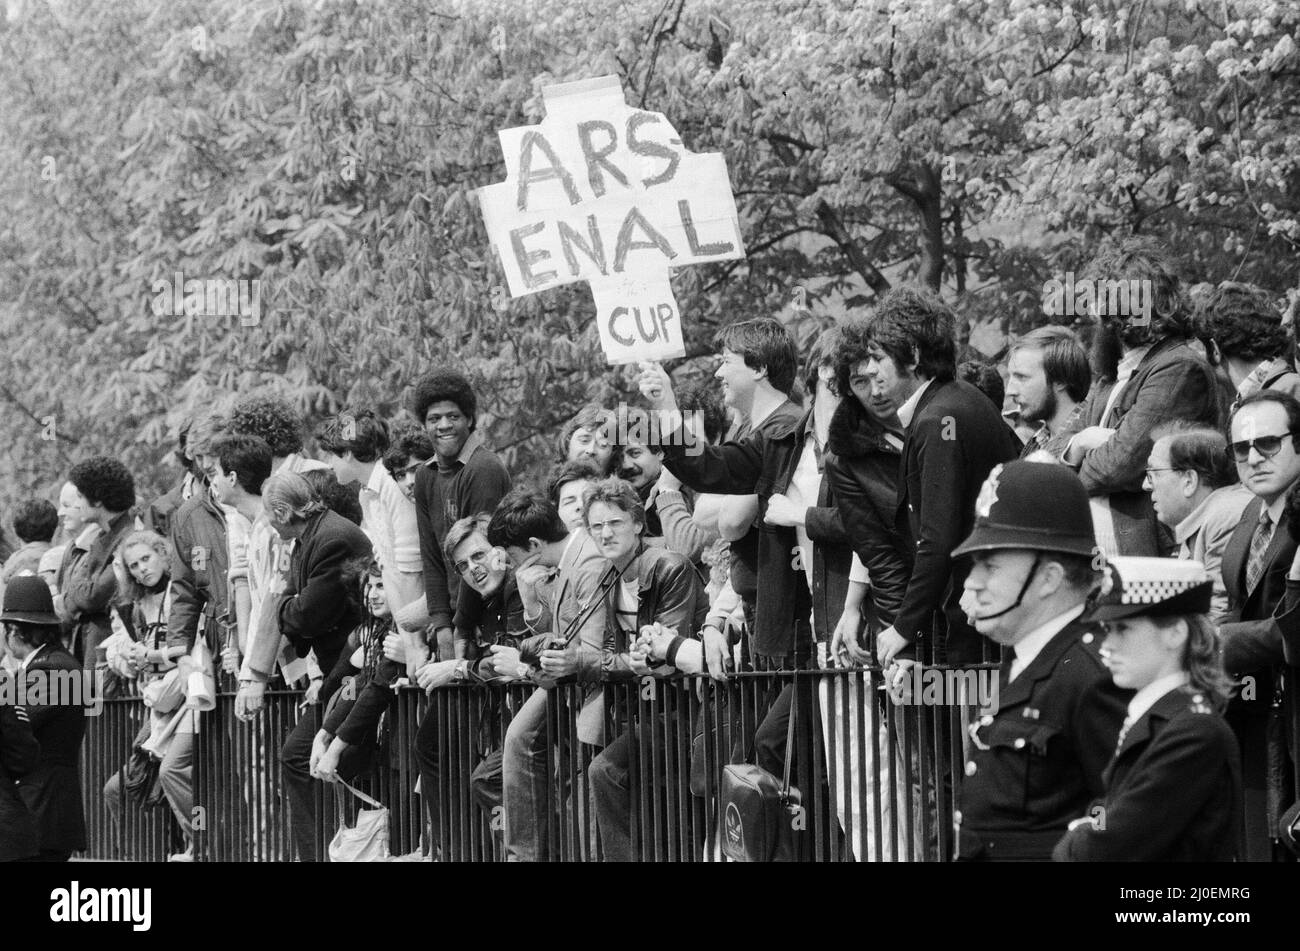 Il secondo giorno dell'assedio dell'ambasciata iraniana a Londra dove sei pistoleri del gruppo estremista iraniano 'movimento rivoluzionario democratico per la Liberazione dell'Arabistan' hanno assalito l'edificio, prendendo 26 ostaggi prima che il SAS riunciò l'ambasciata e liberasse gli ostaggi. I sostenitori del calcio dell'Arsenal guardano avanti durante la dimostrazione da parte dei sostenitori di Ayatollah fuori dell'Ambasciata. 1st maggio 1980. Foto Stock